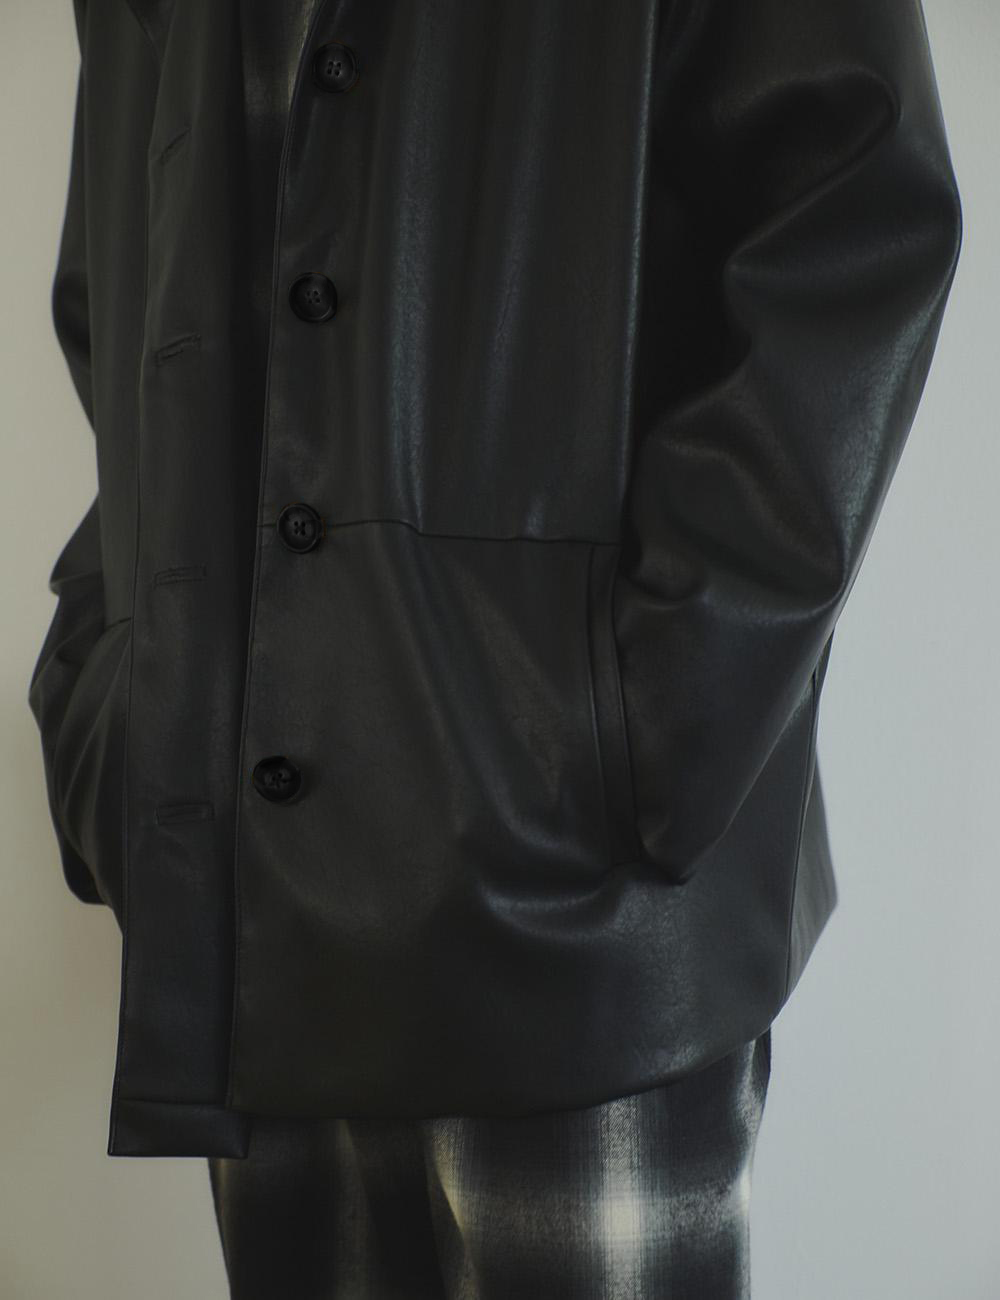 RANDEBOO Vegan leather jacket